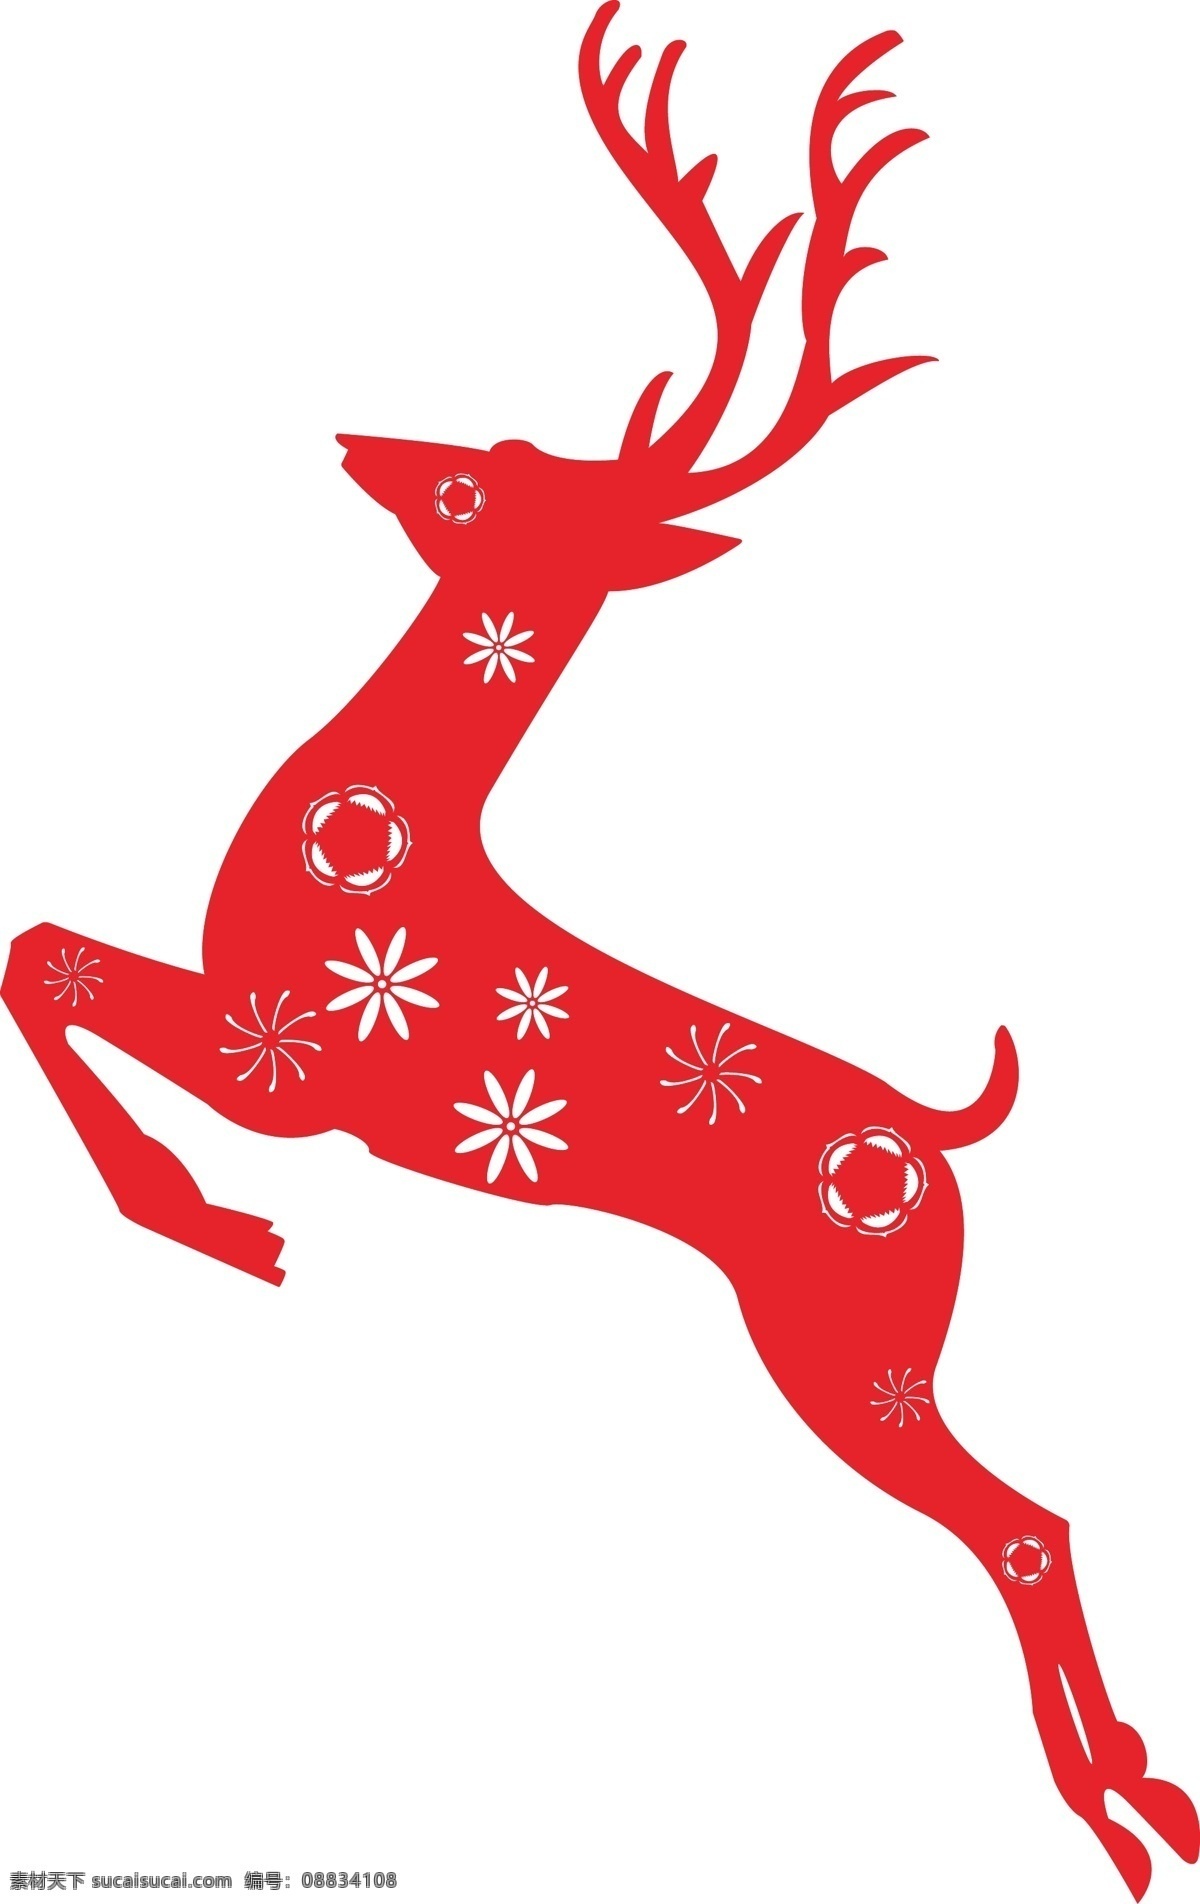 鹿卡通矢量图 鹿 矢量鹿 鹿矢量 鹿卡通 圣诞元素 圣诞素材 节日元素 节日素材 圣诞节元素 麋鹿 驯鹿 文化艺术 传统文化